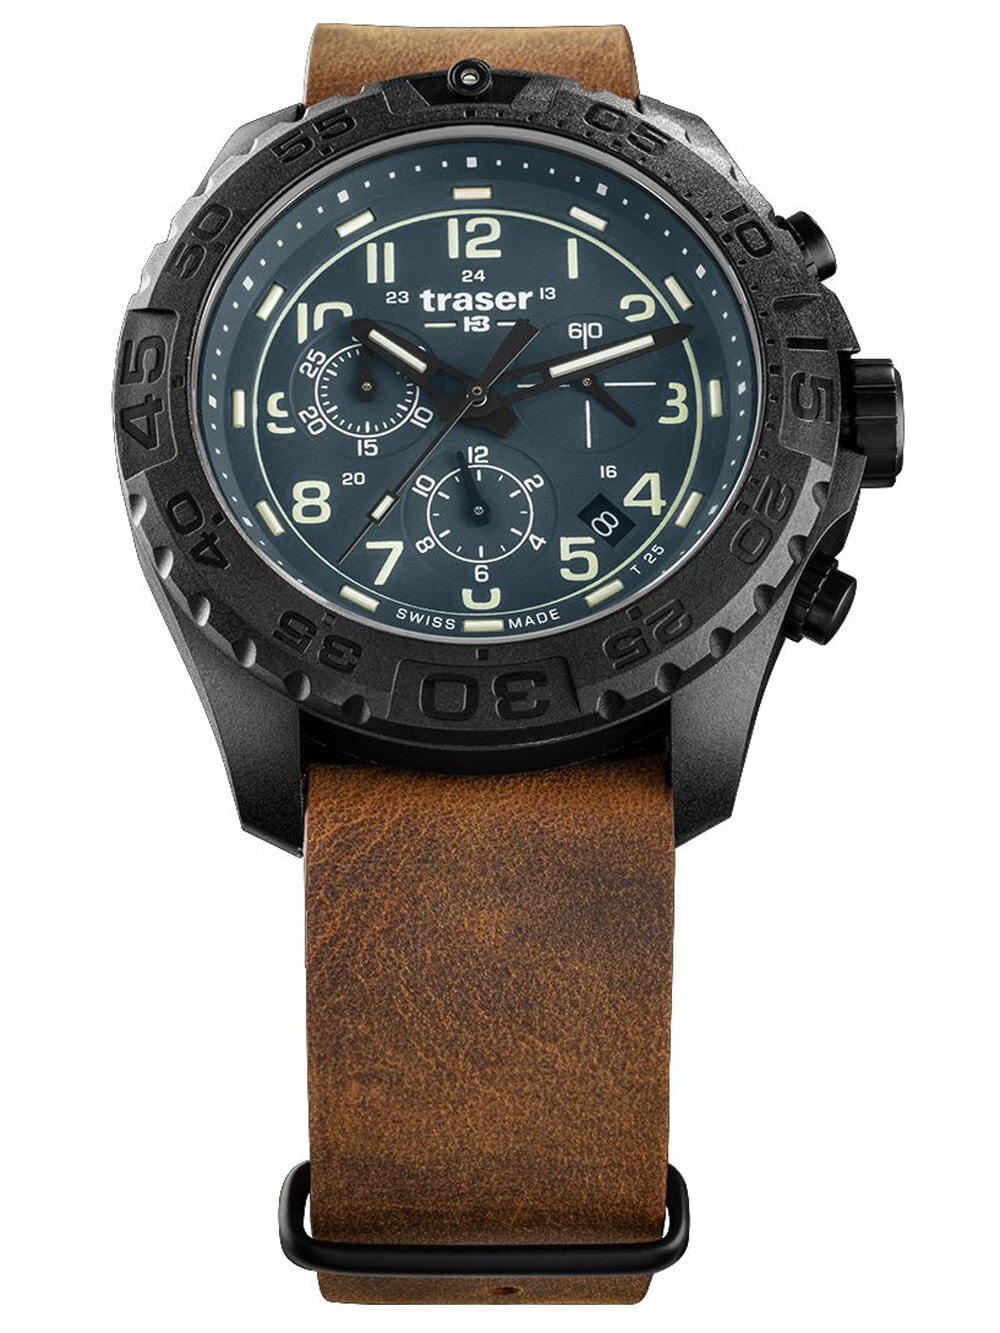 Мужские наручные часы с коричневым кожаным ремешком Traser H3 109049 P96 OdP Evolution petrol Chronograph 44mm 20ATM